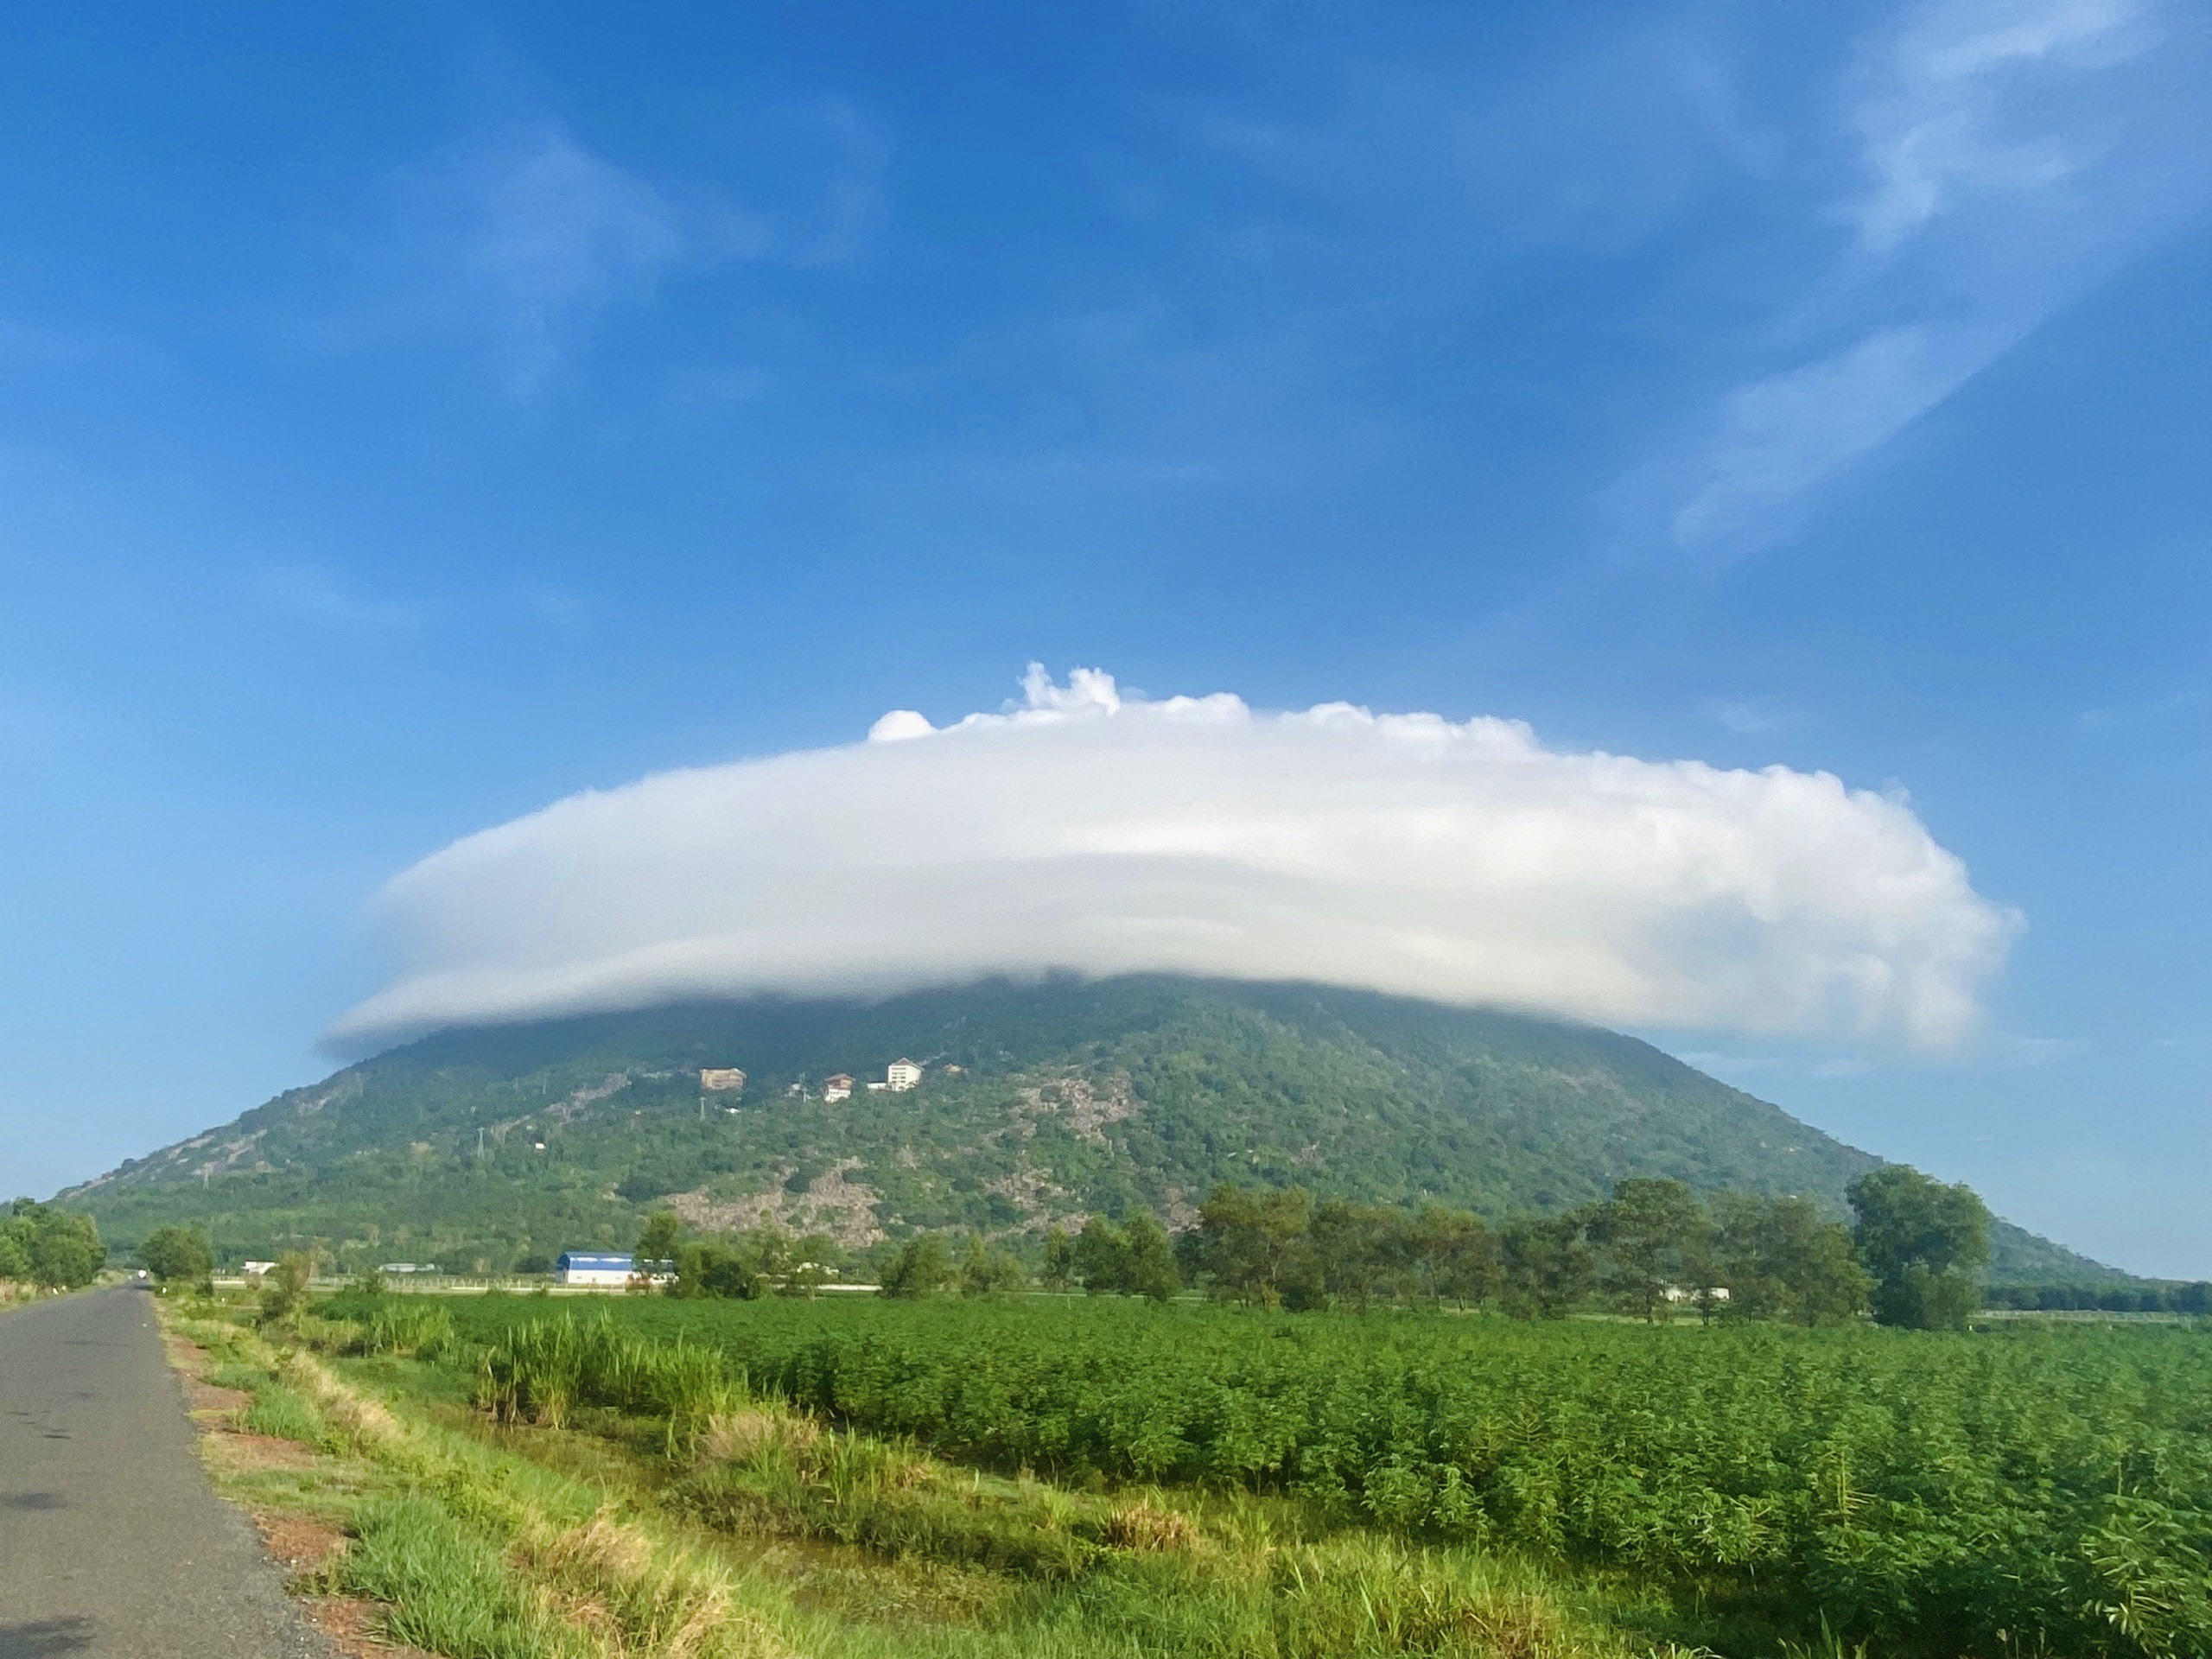 Săn mây đĩa bay tại núi Bà Đen, Tây Ninh đang hot, và đây là bí kíp - 2